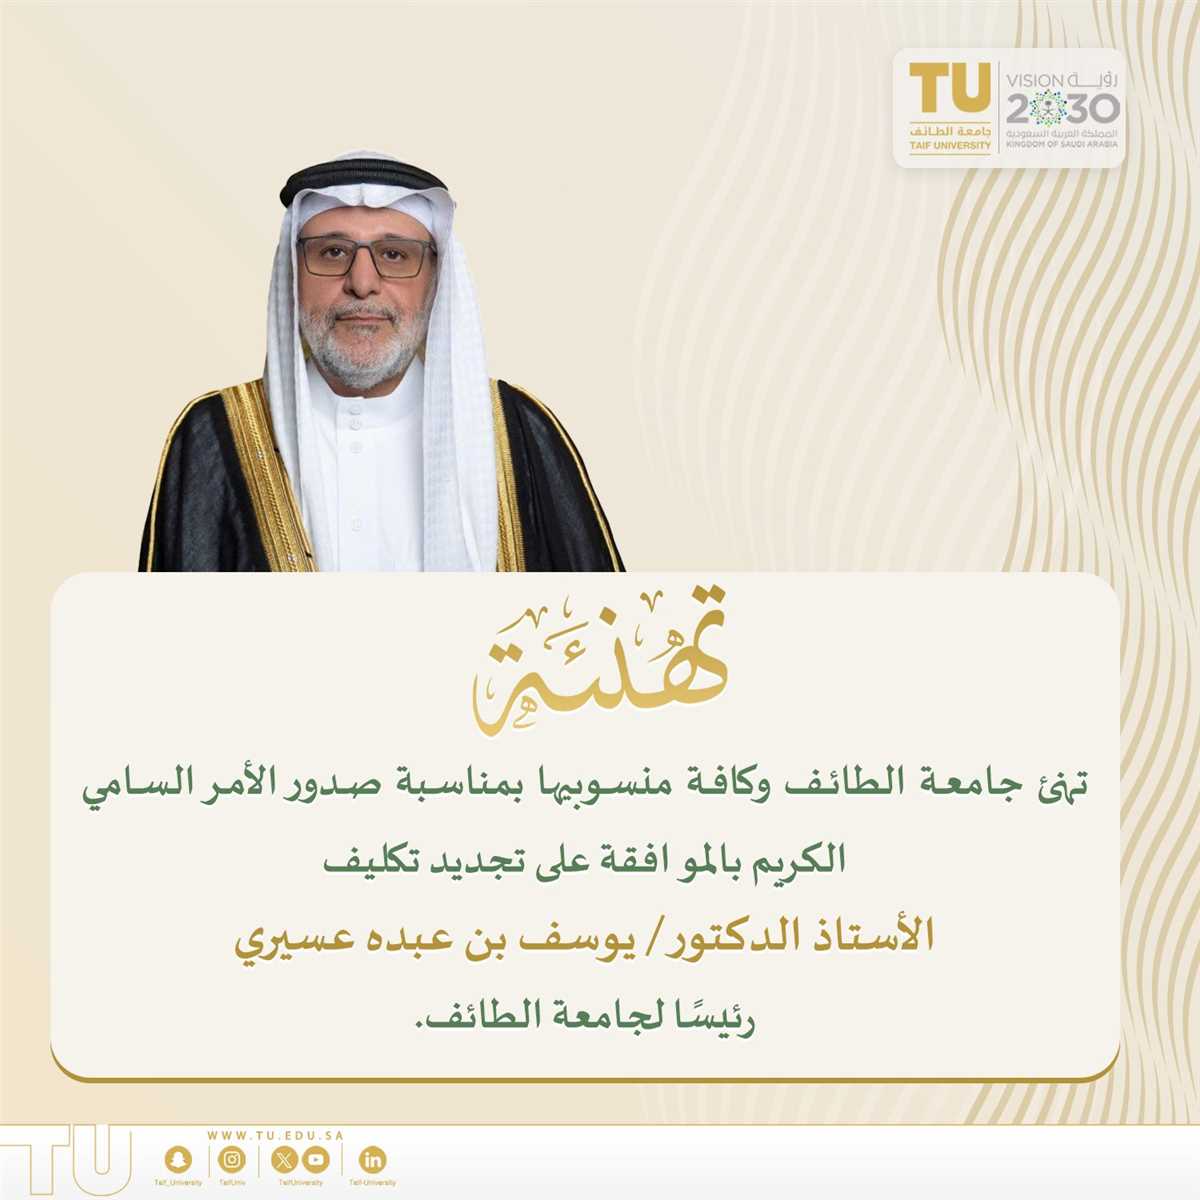  تجديد تكليف أ.د يوسف بن عبده عسيري رئيسًا لجامعة الطائف